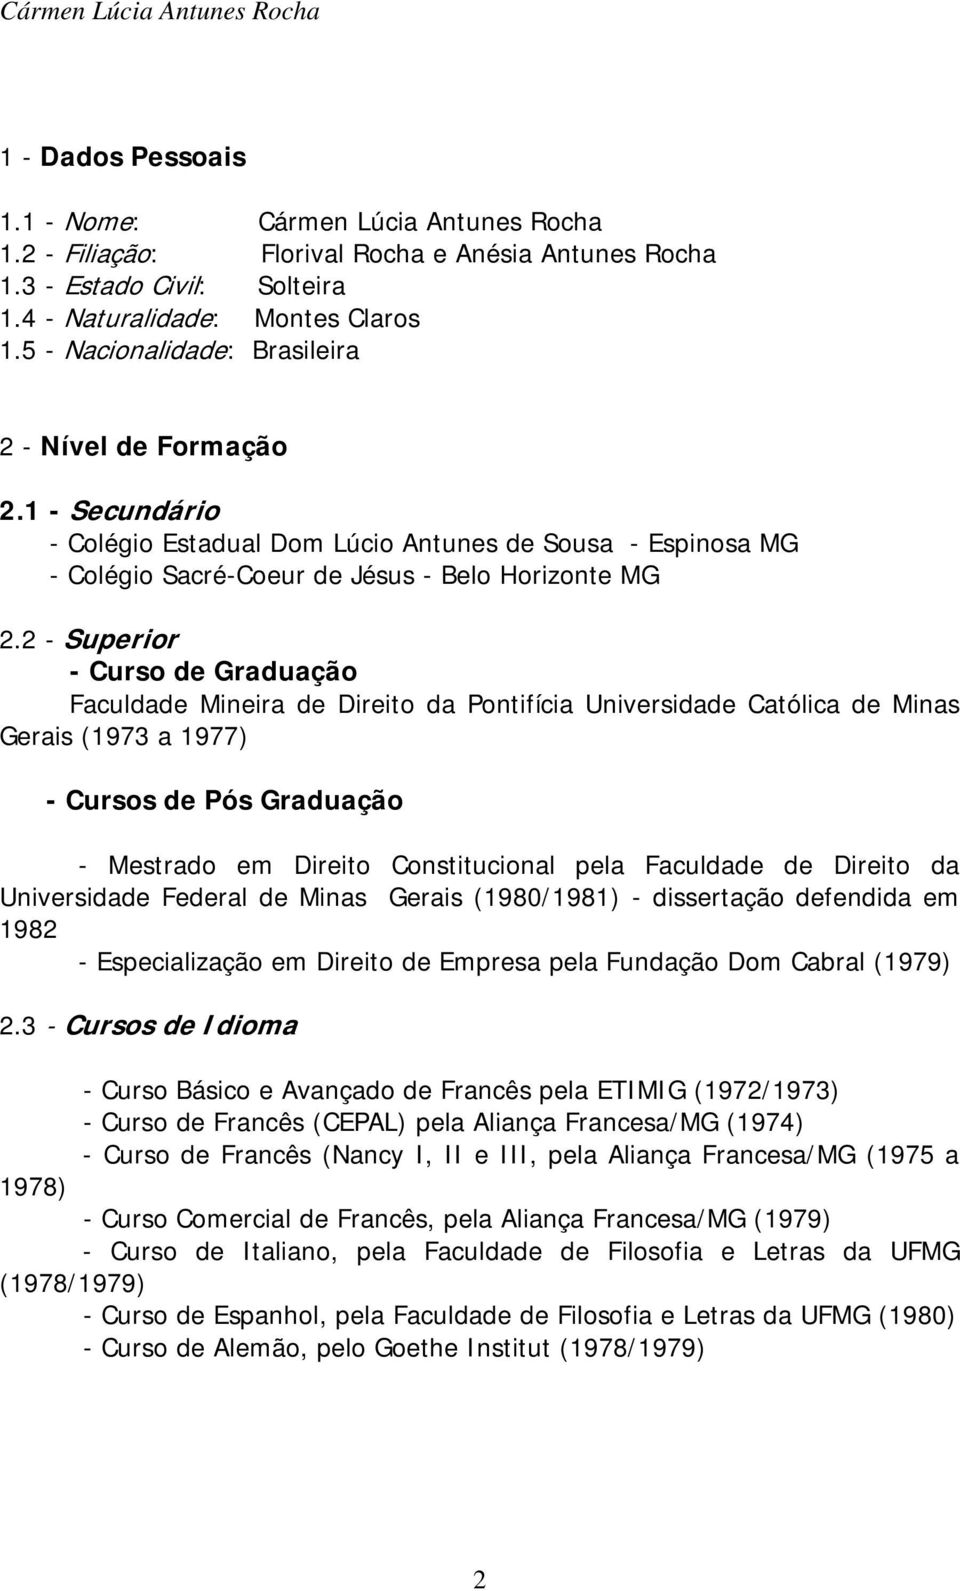 2 - Superior - Curso de Graduação Faculdade Mineira de Direito da Pontifícia Universidade Católica de Minas Gerais (1973 a 1977) - Cursos de Pós Graduação - Mestrado em Direito Constitucional pela